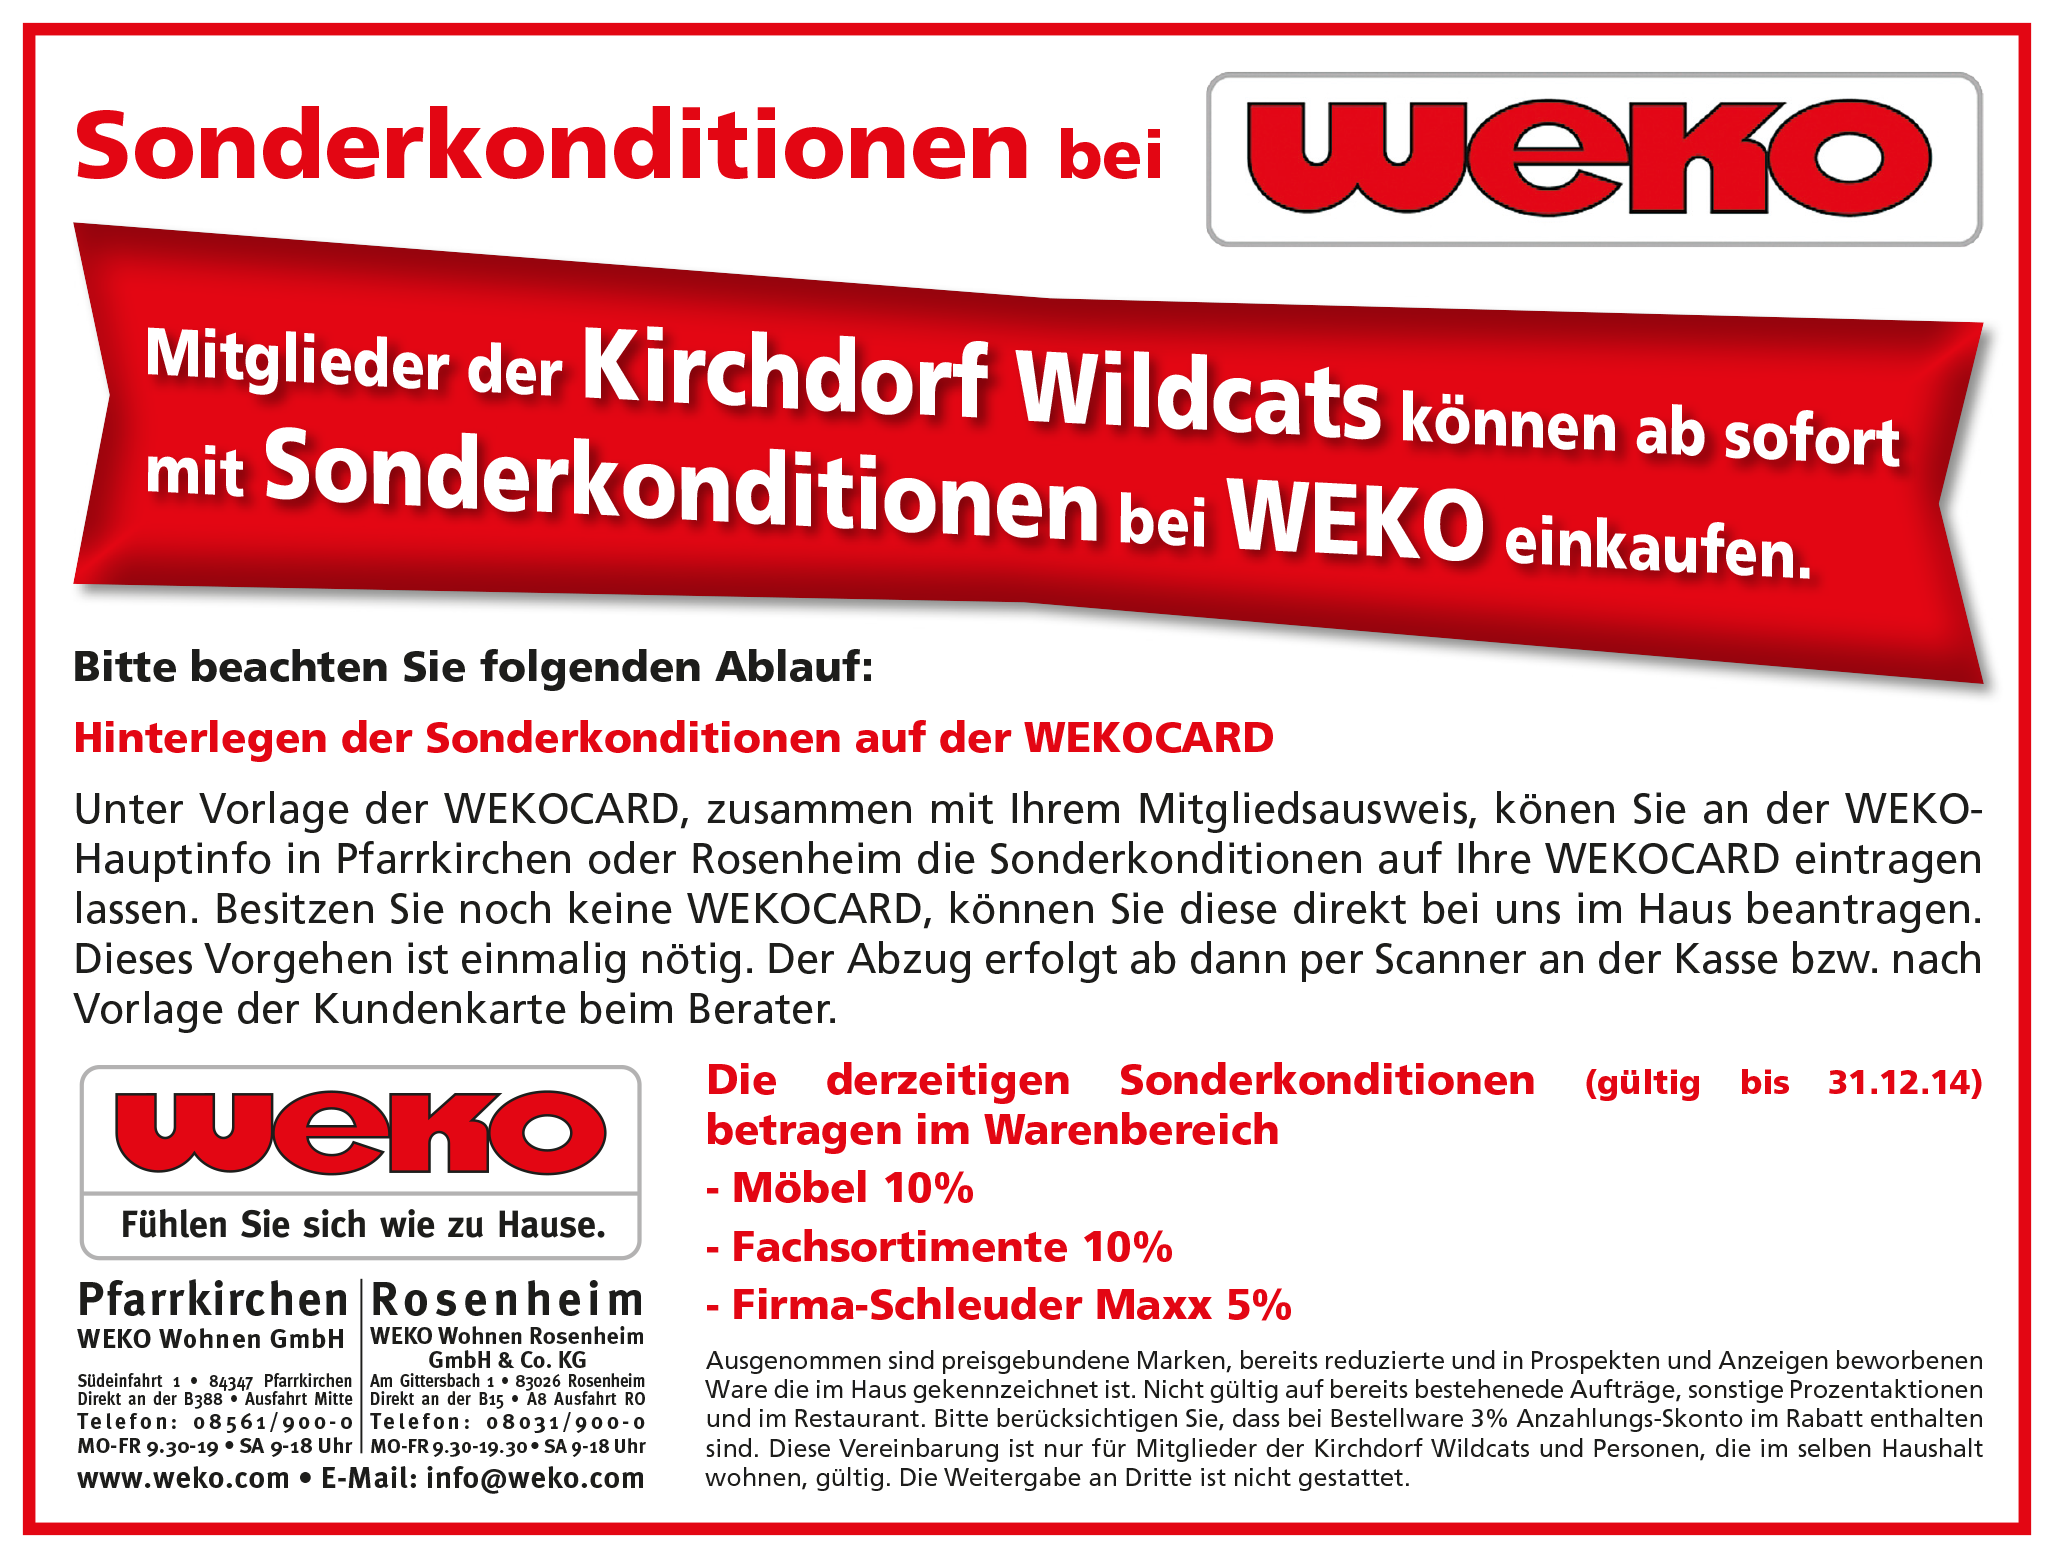 Wildcats kaufen günstig bei WEKO ein